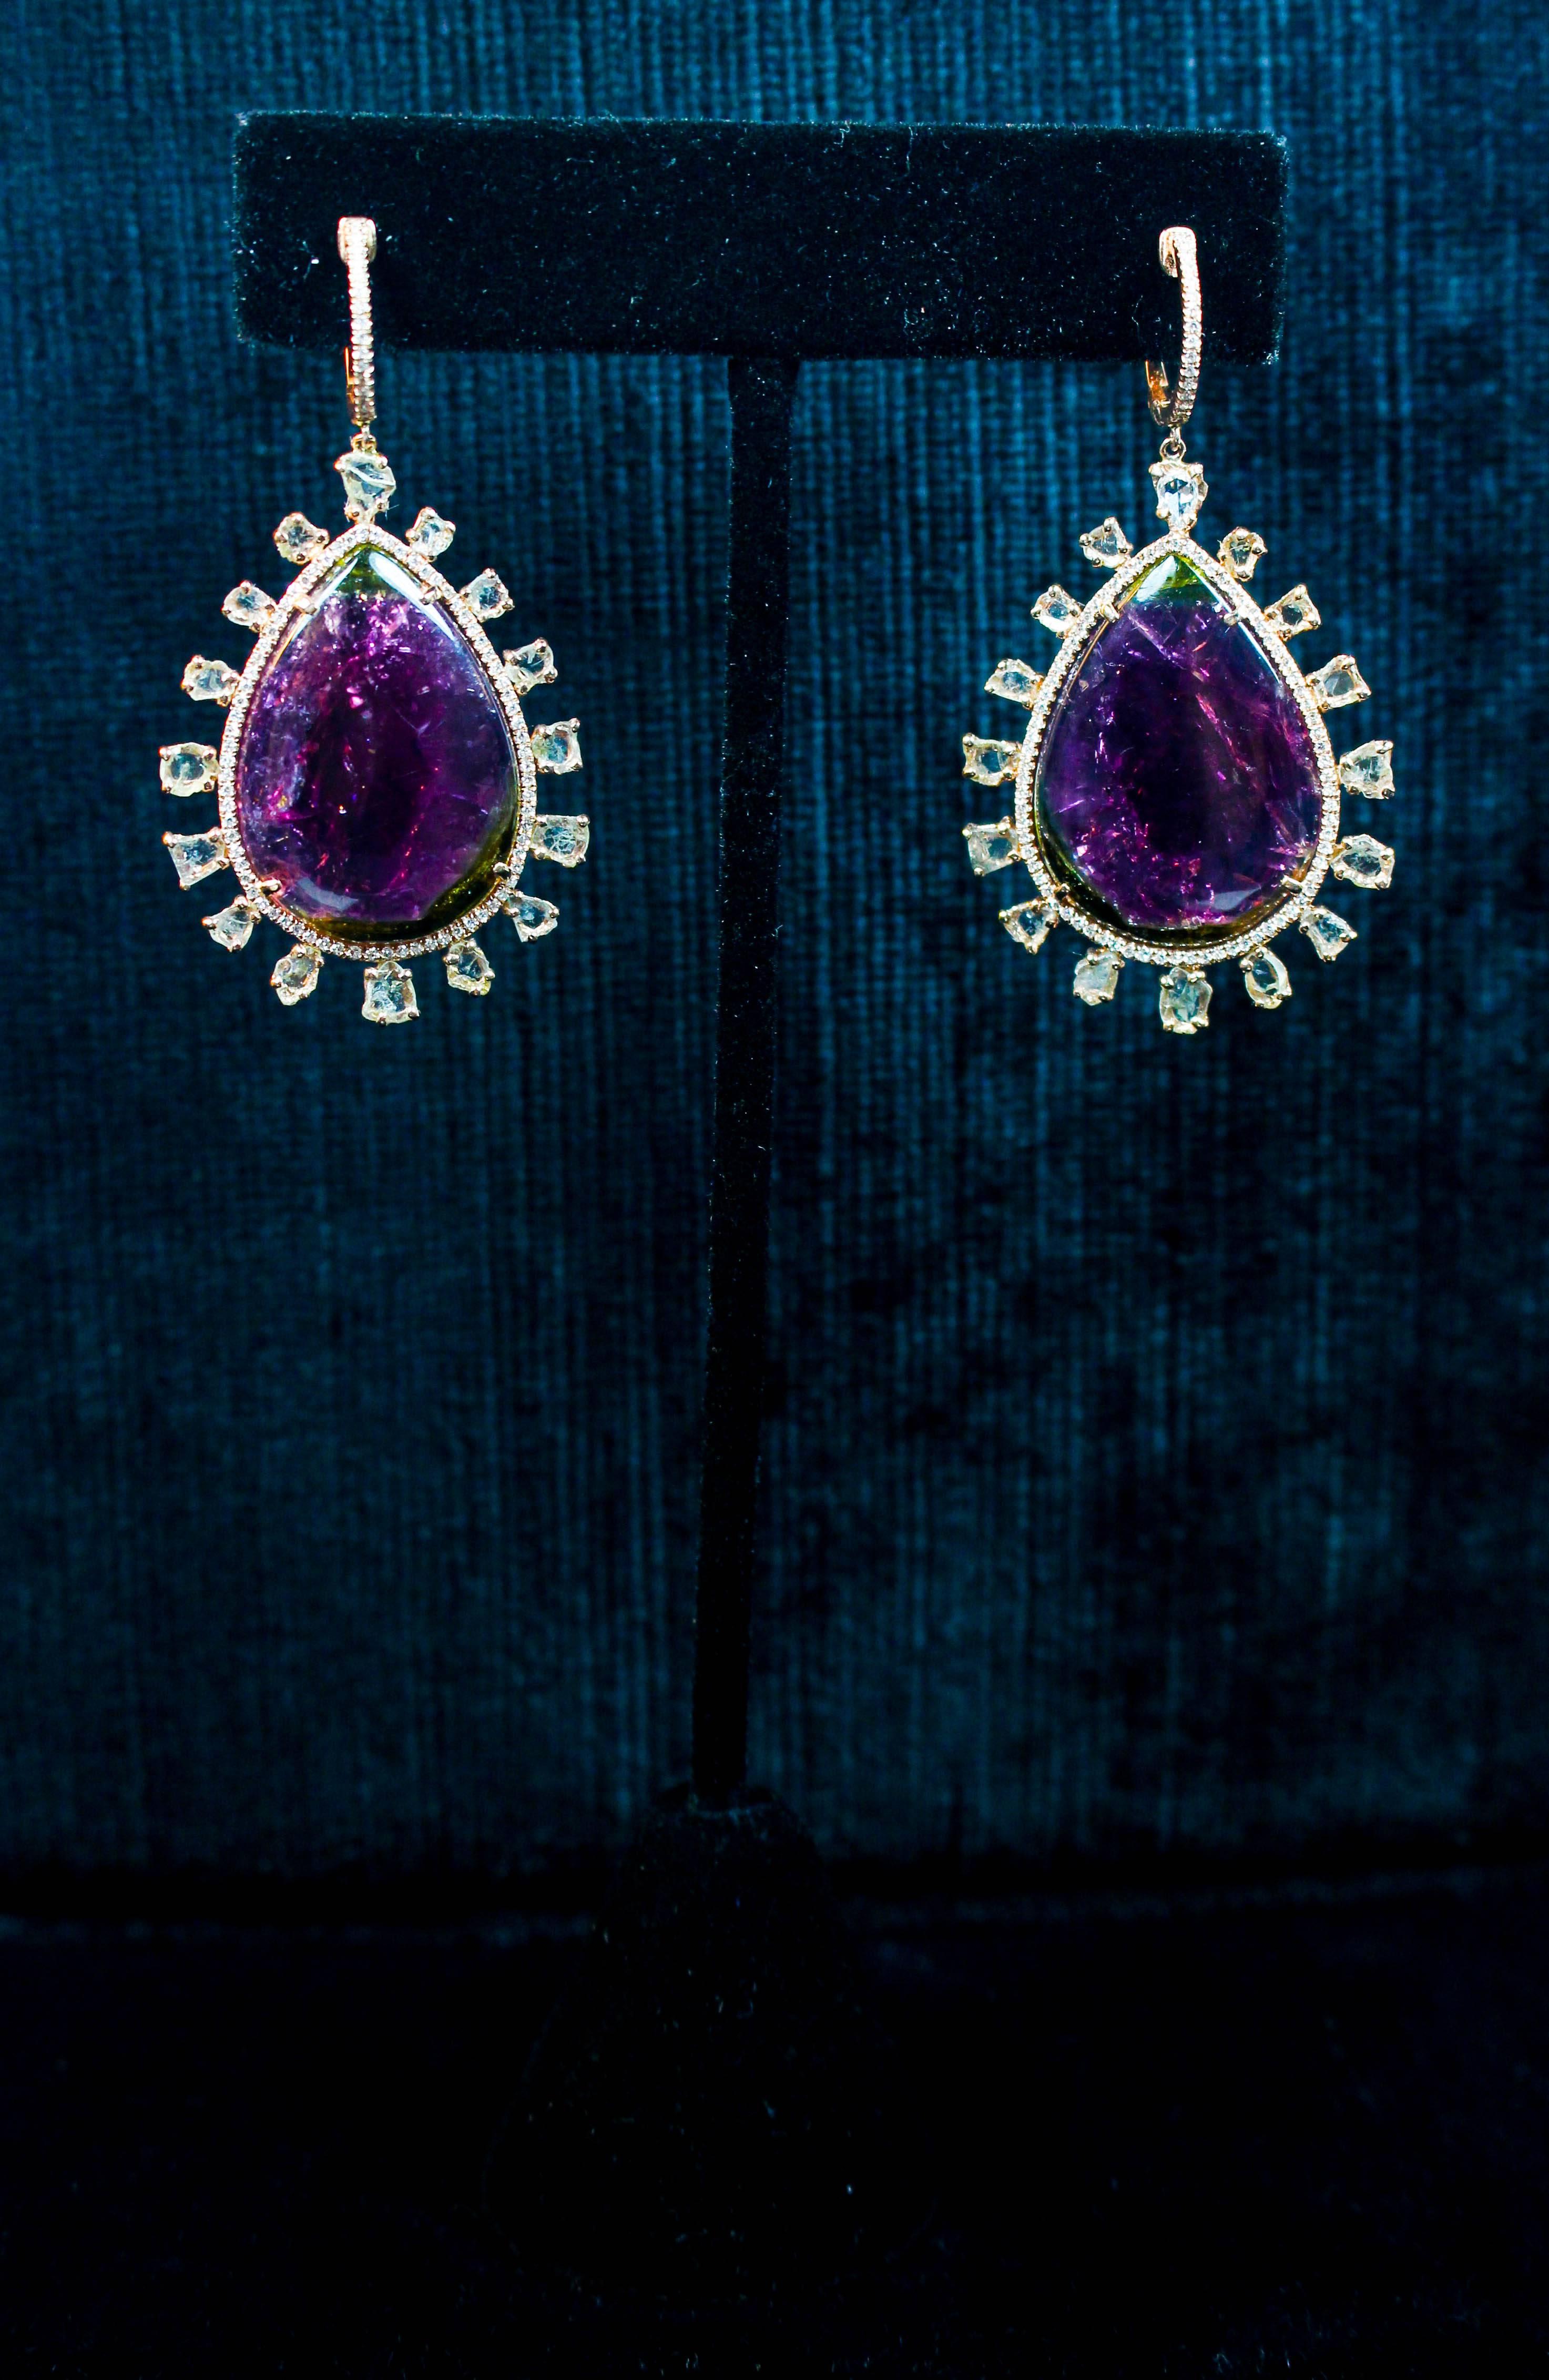 Diese Ohrringe bestehen aus Roségold mit einem großen, in Scheiben geschnittenen violetten Turmalin und einem Diamanten als Akzent. Ein absolut beeindruckendes Design. Spezifikationen unten. In ausgezeichnetem Zustand.

Bitte zögern Sie nicht, uns